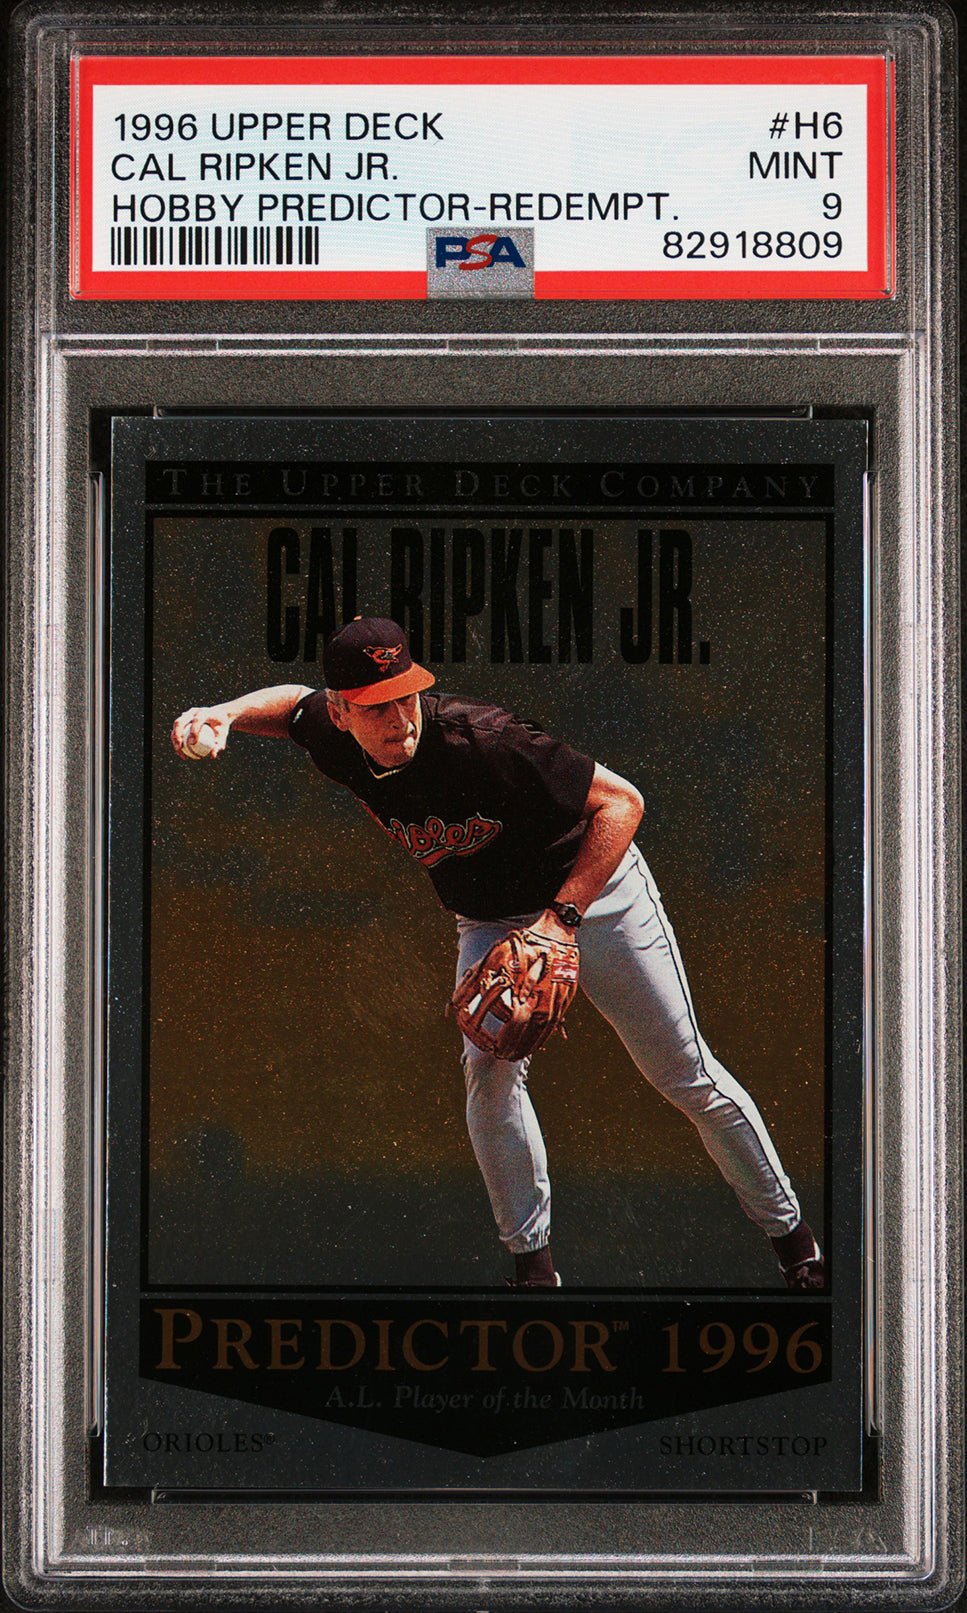 CAL RIPKEN JR PSA 9 1996 Upper Deck Hobby Predictor Redemption #H6 Baseball Graded Cards Insert - Hobby Gems